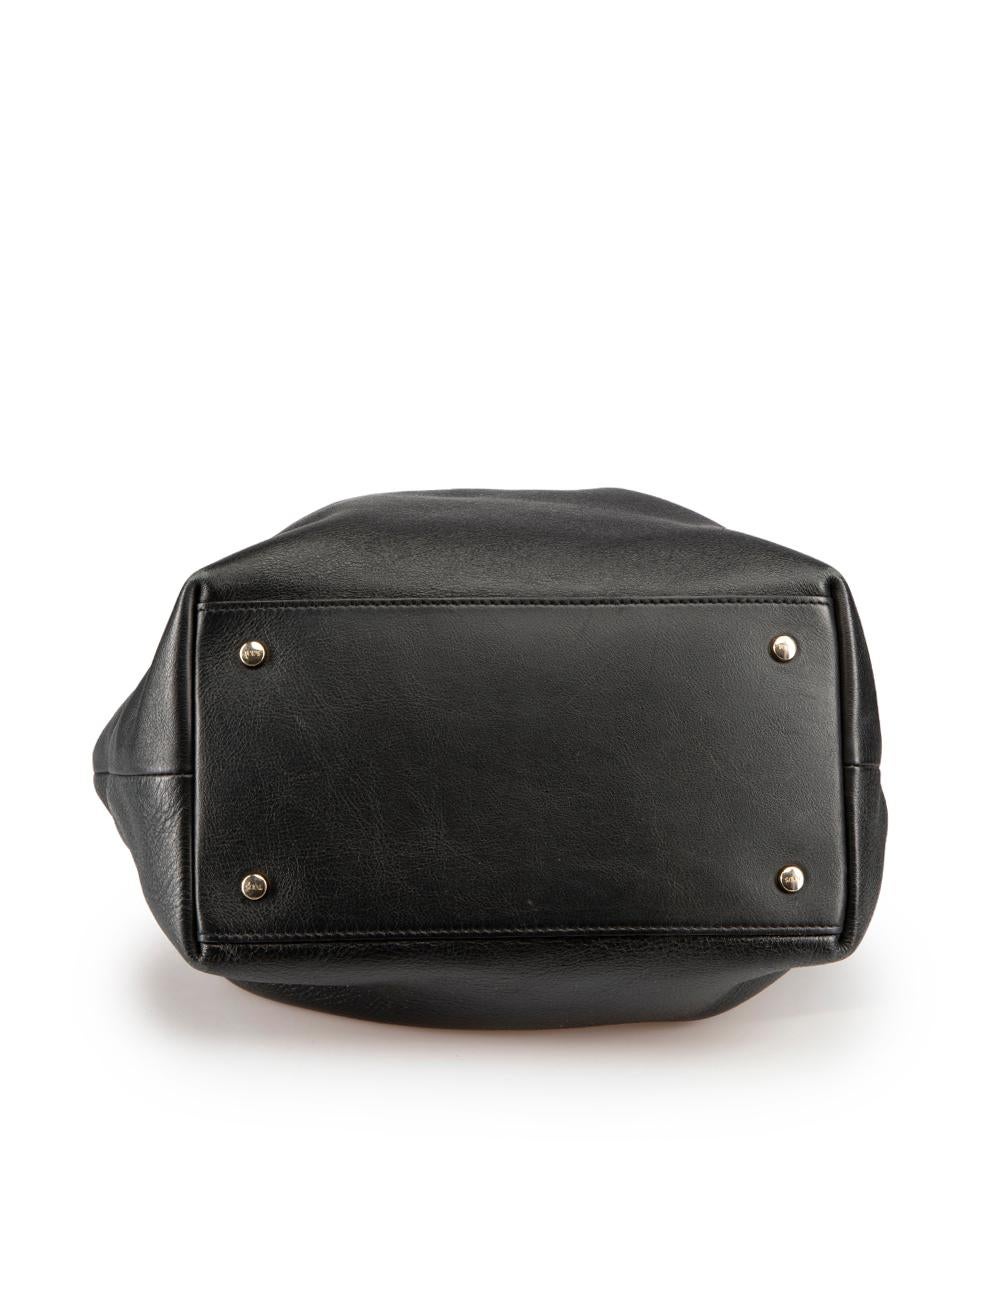 Women's Tod's Black Leather Medium Shoulder Bag For Sale